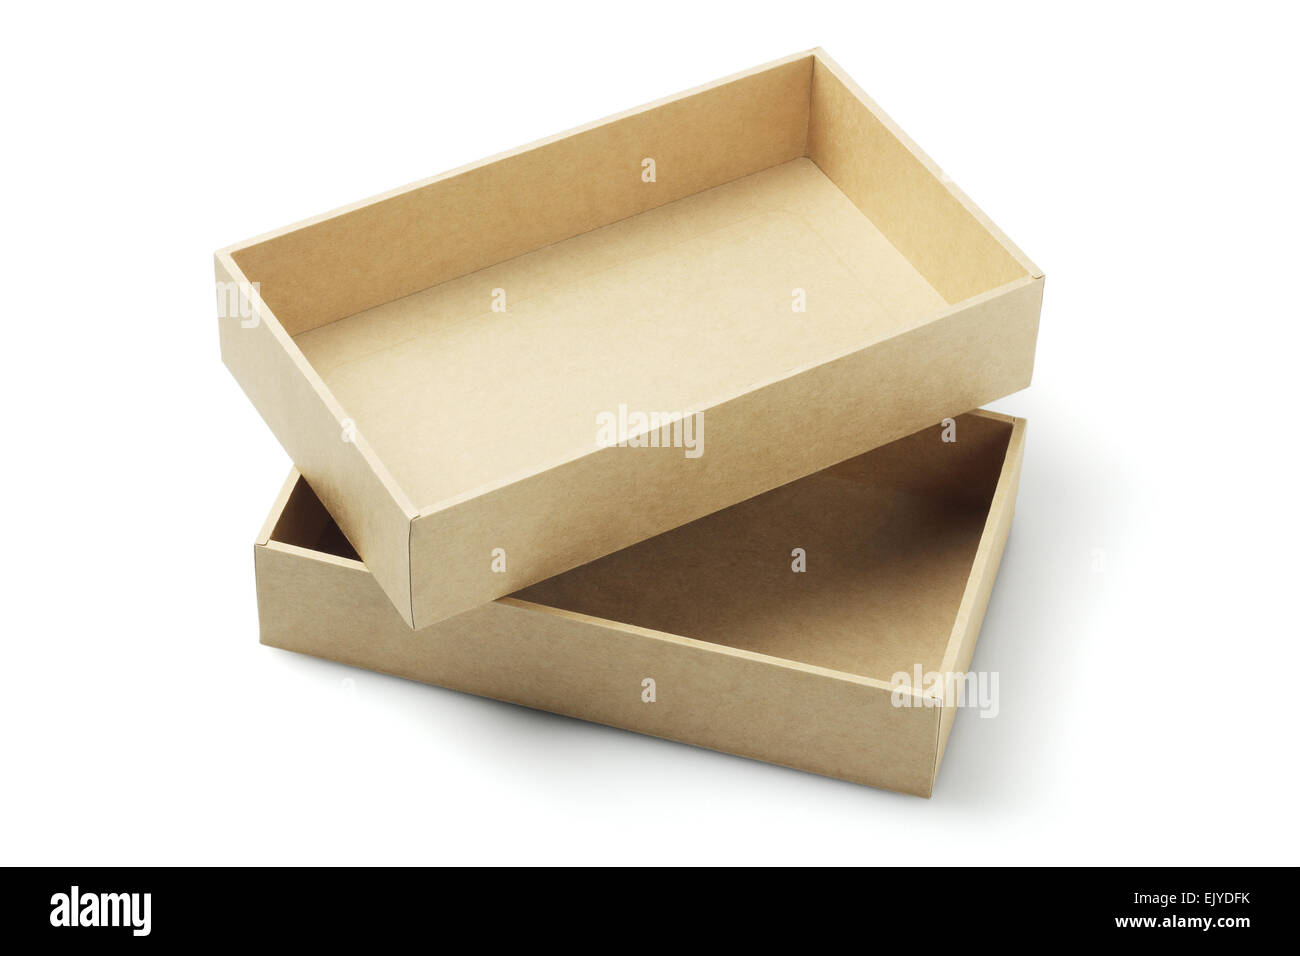 Offenen Karton Verpackung Box auf weißem Hintergrund Stockfoto